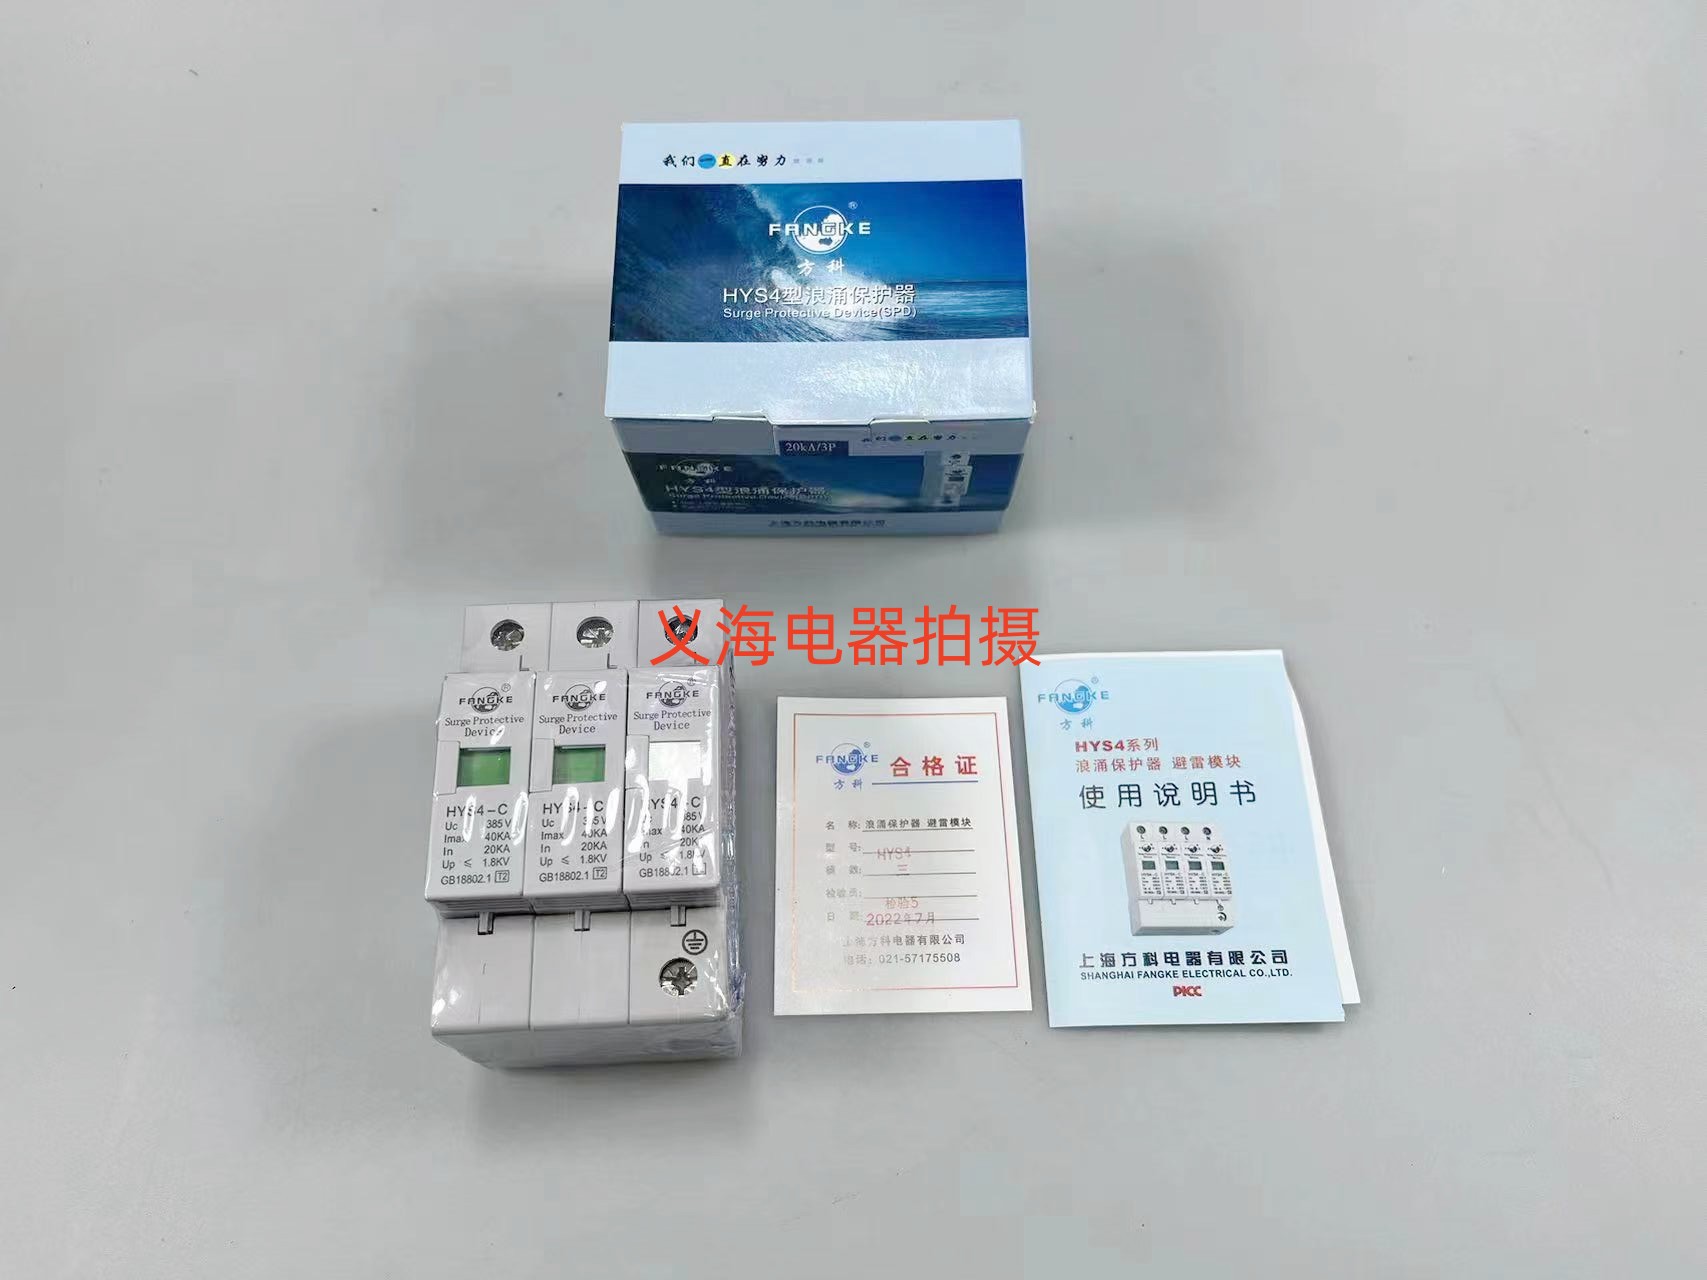 上海方科 HYS4-C 3P 20-40KA 浪涌保护器 防雷/电涌保护器 避雷器